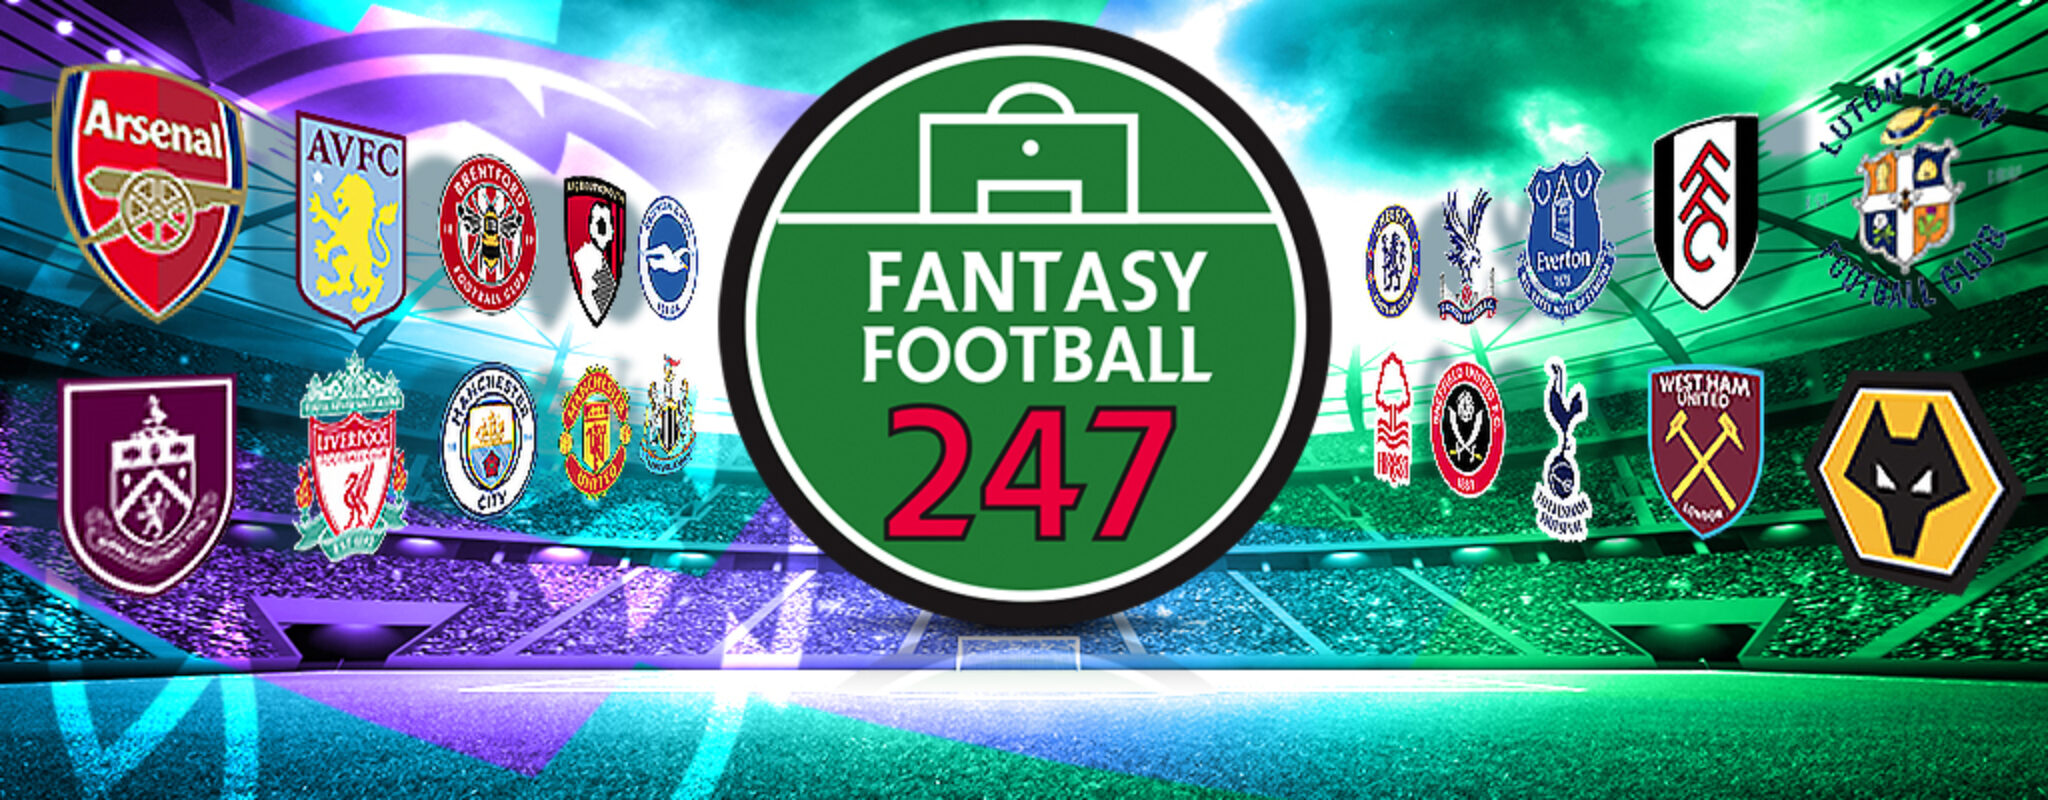 Fantasy Football Fixture Tracker